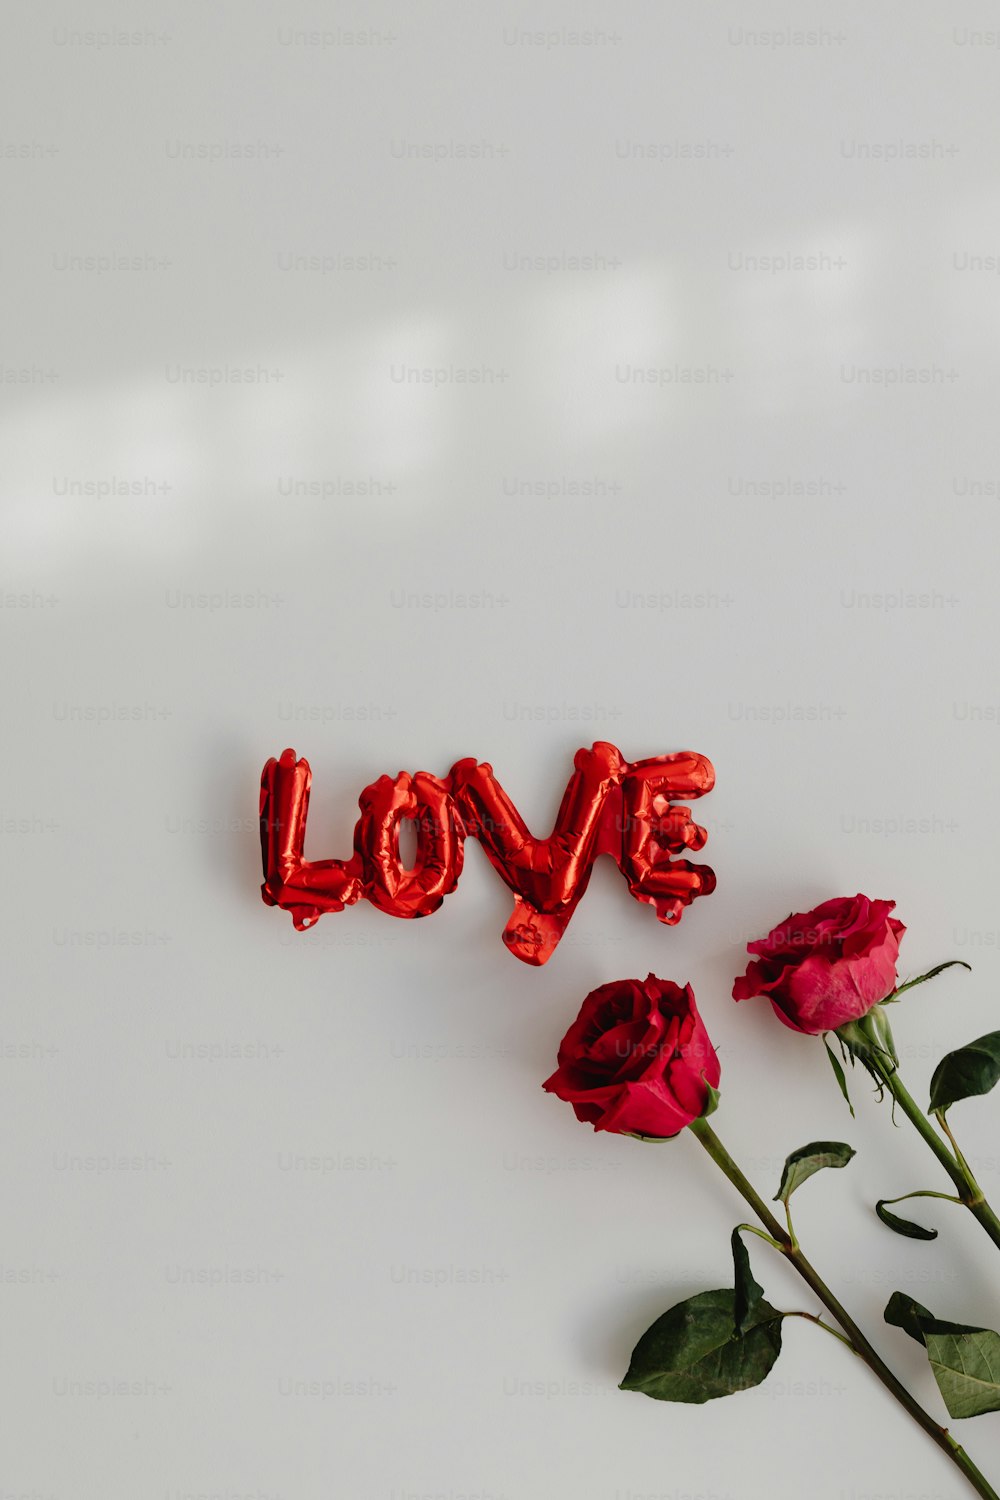 사랑이라는 단어 옆에 앉아있는 빨간 장미